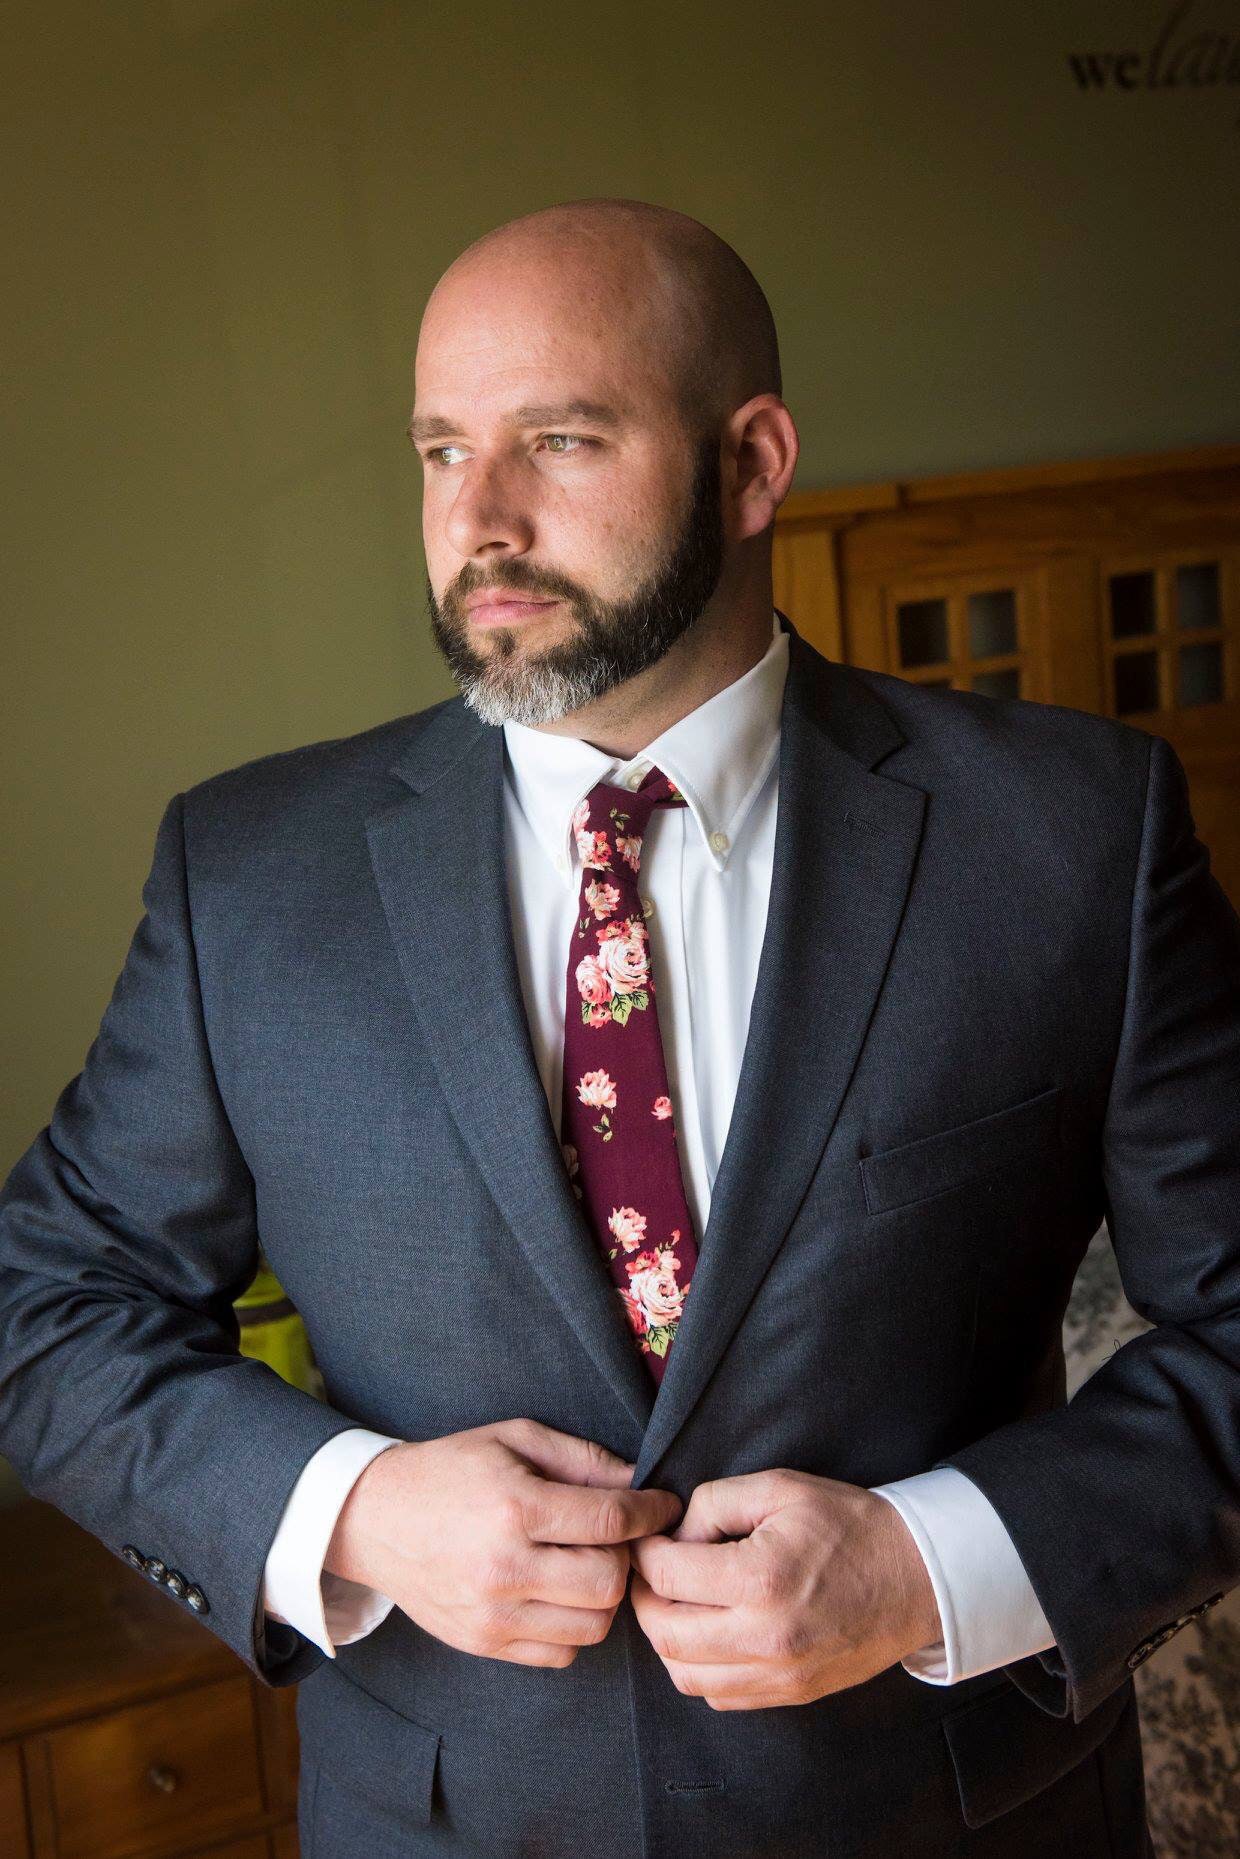 Burgundy roses neck tie for groom neckties groomsmen skinny | Etsy